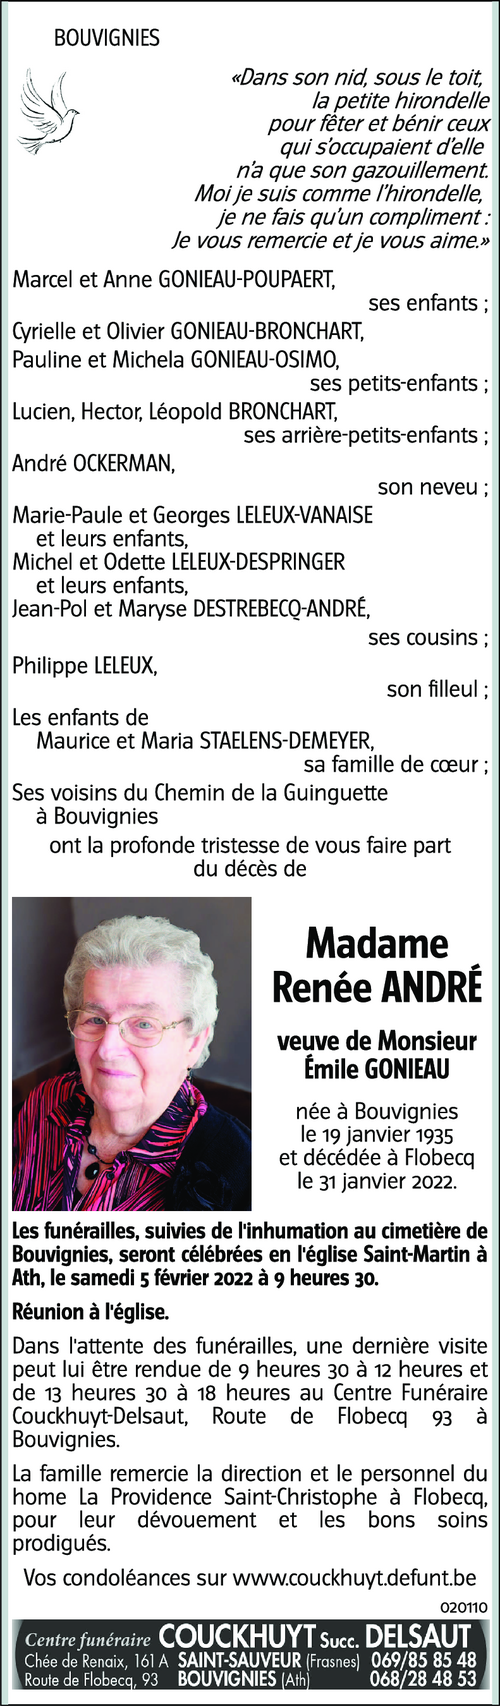 Renée ANDRE